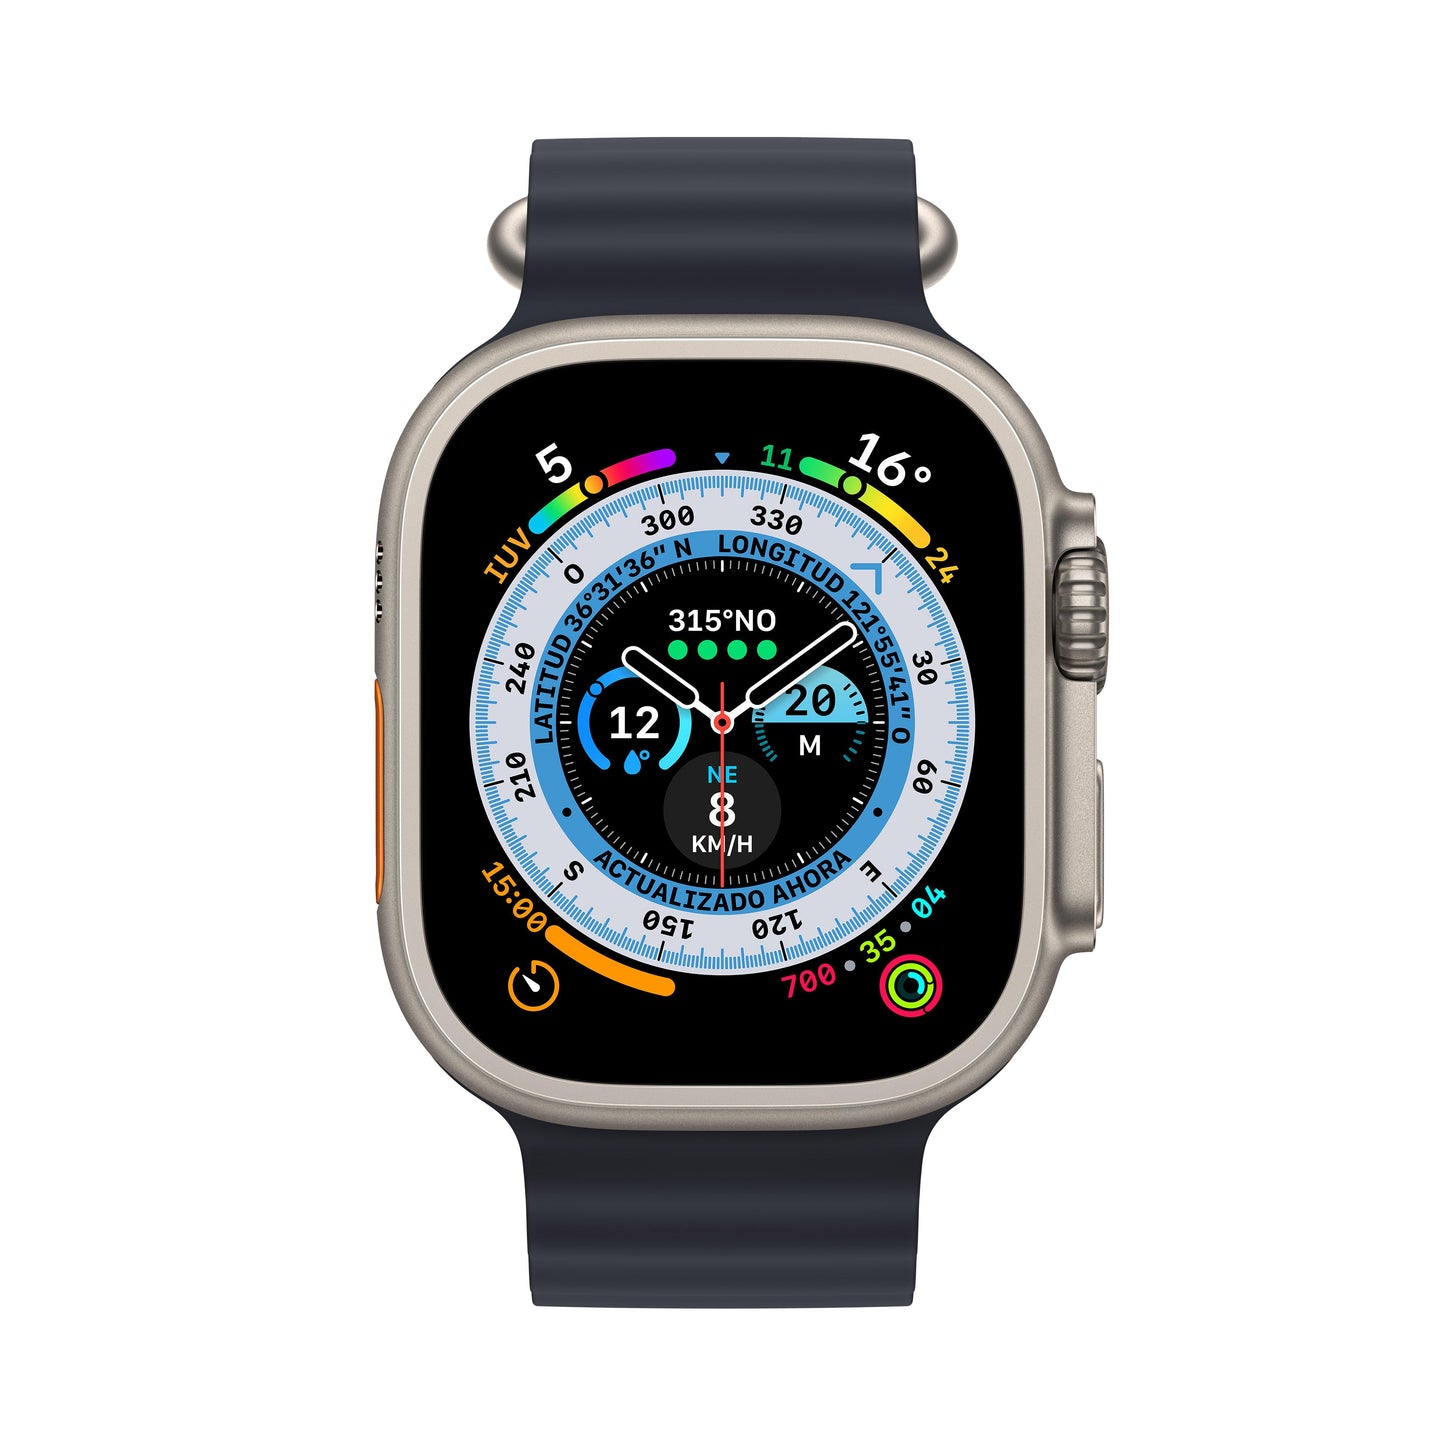 Apple Watch Ultra (GPS + Cellular) - Caja de titanio de 49 mm - Correa Ocean en color medianoche